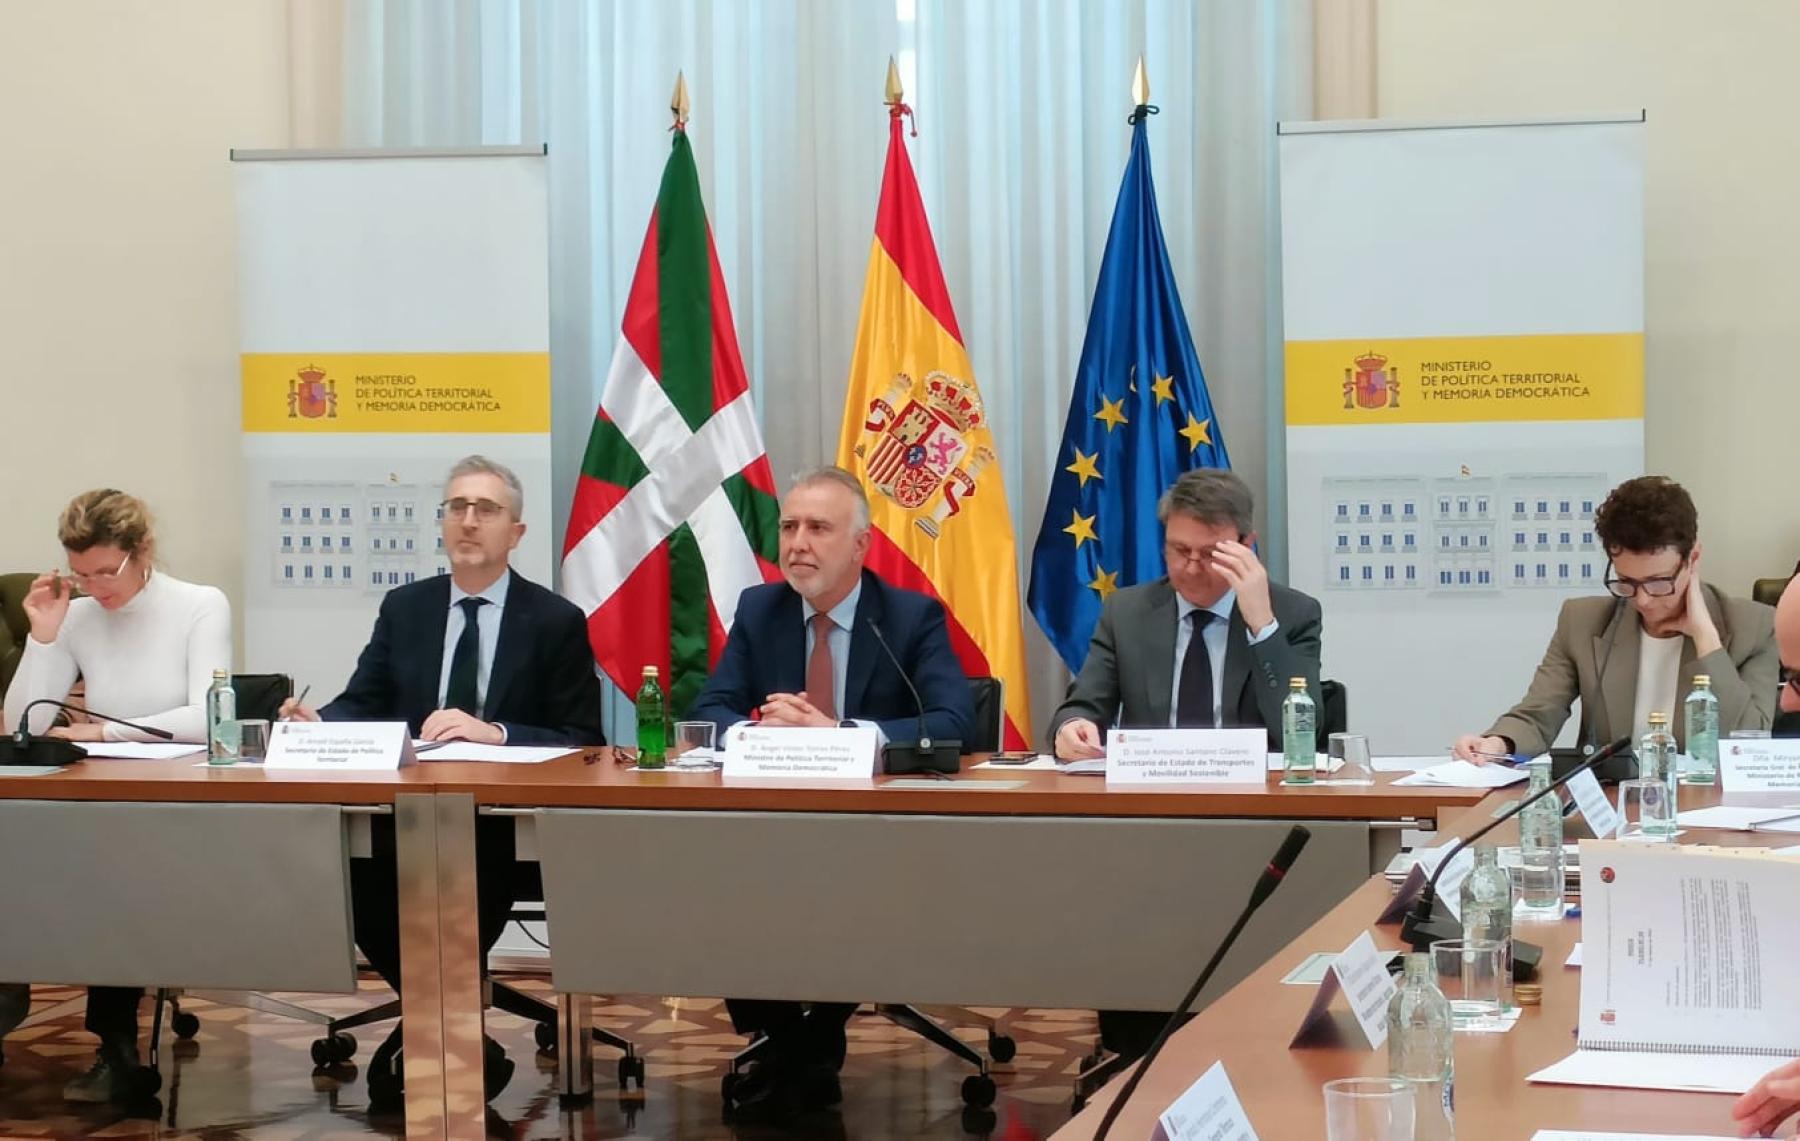 Comisión Mixta de Transferencias Administración del Estado-Comunidad Autónoma del País Vasco